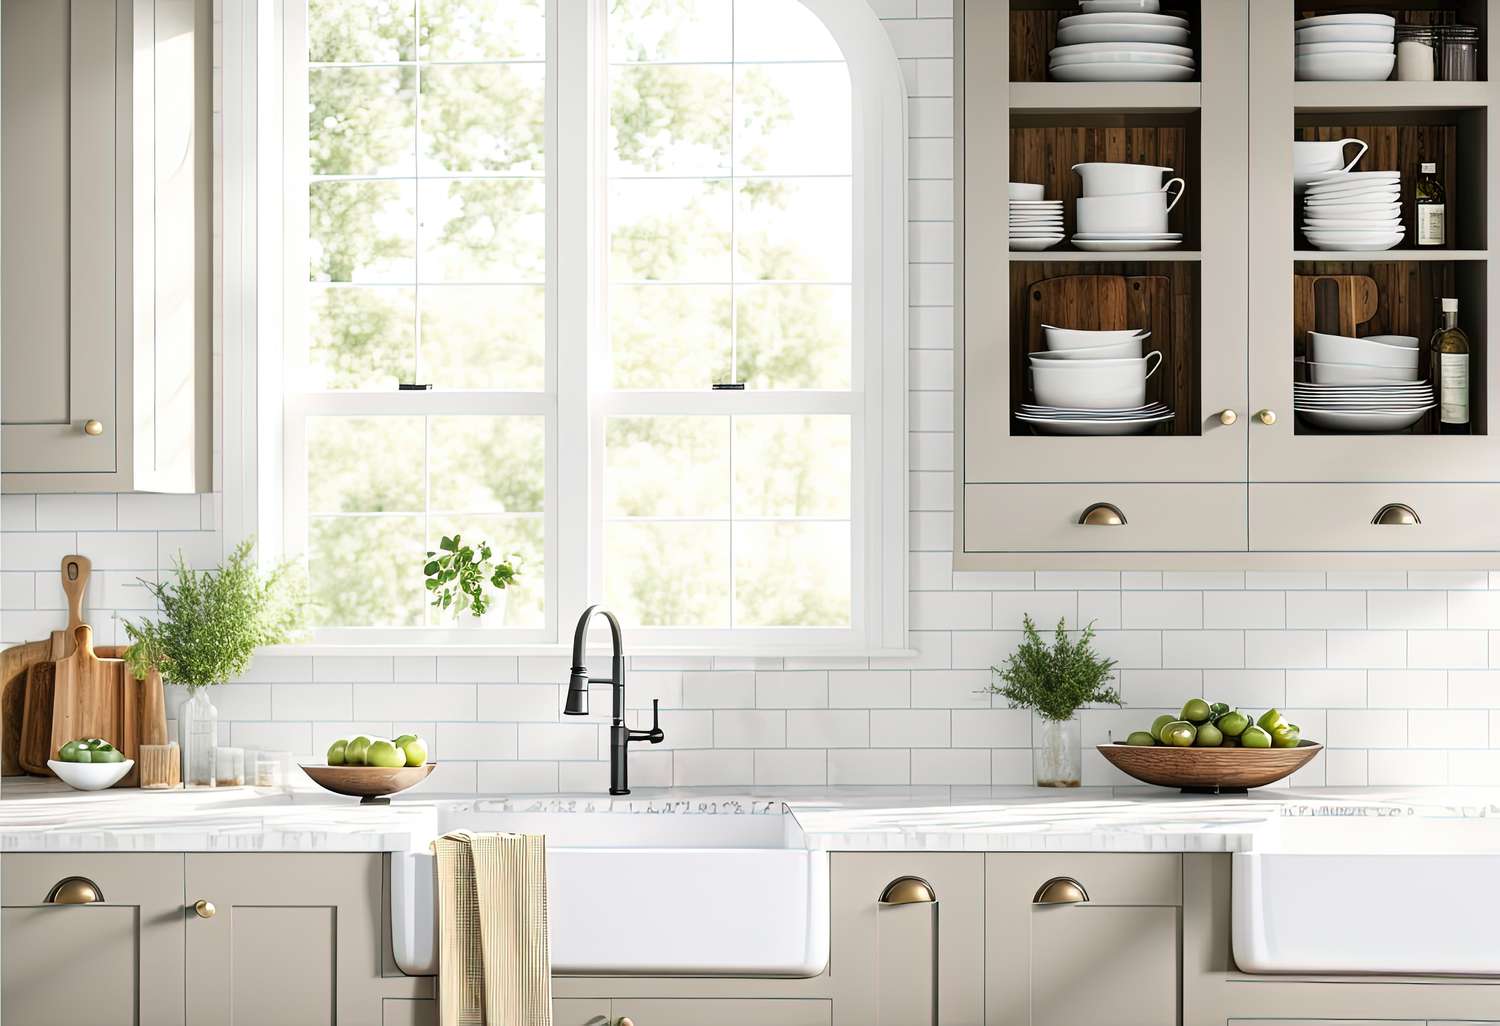 Wunderschöne luftige Küche mit Spülbecken und zwei Fenstern